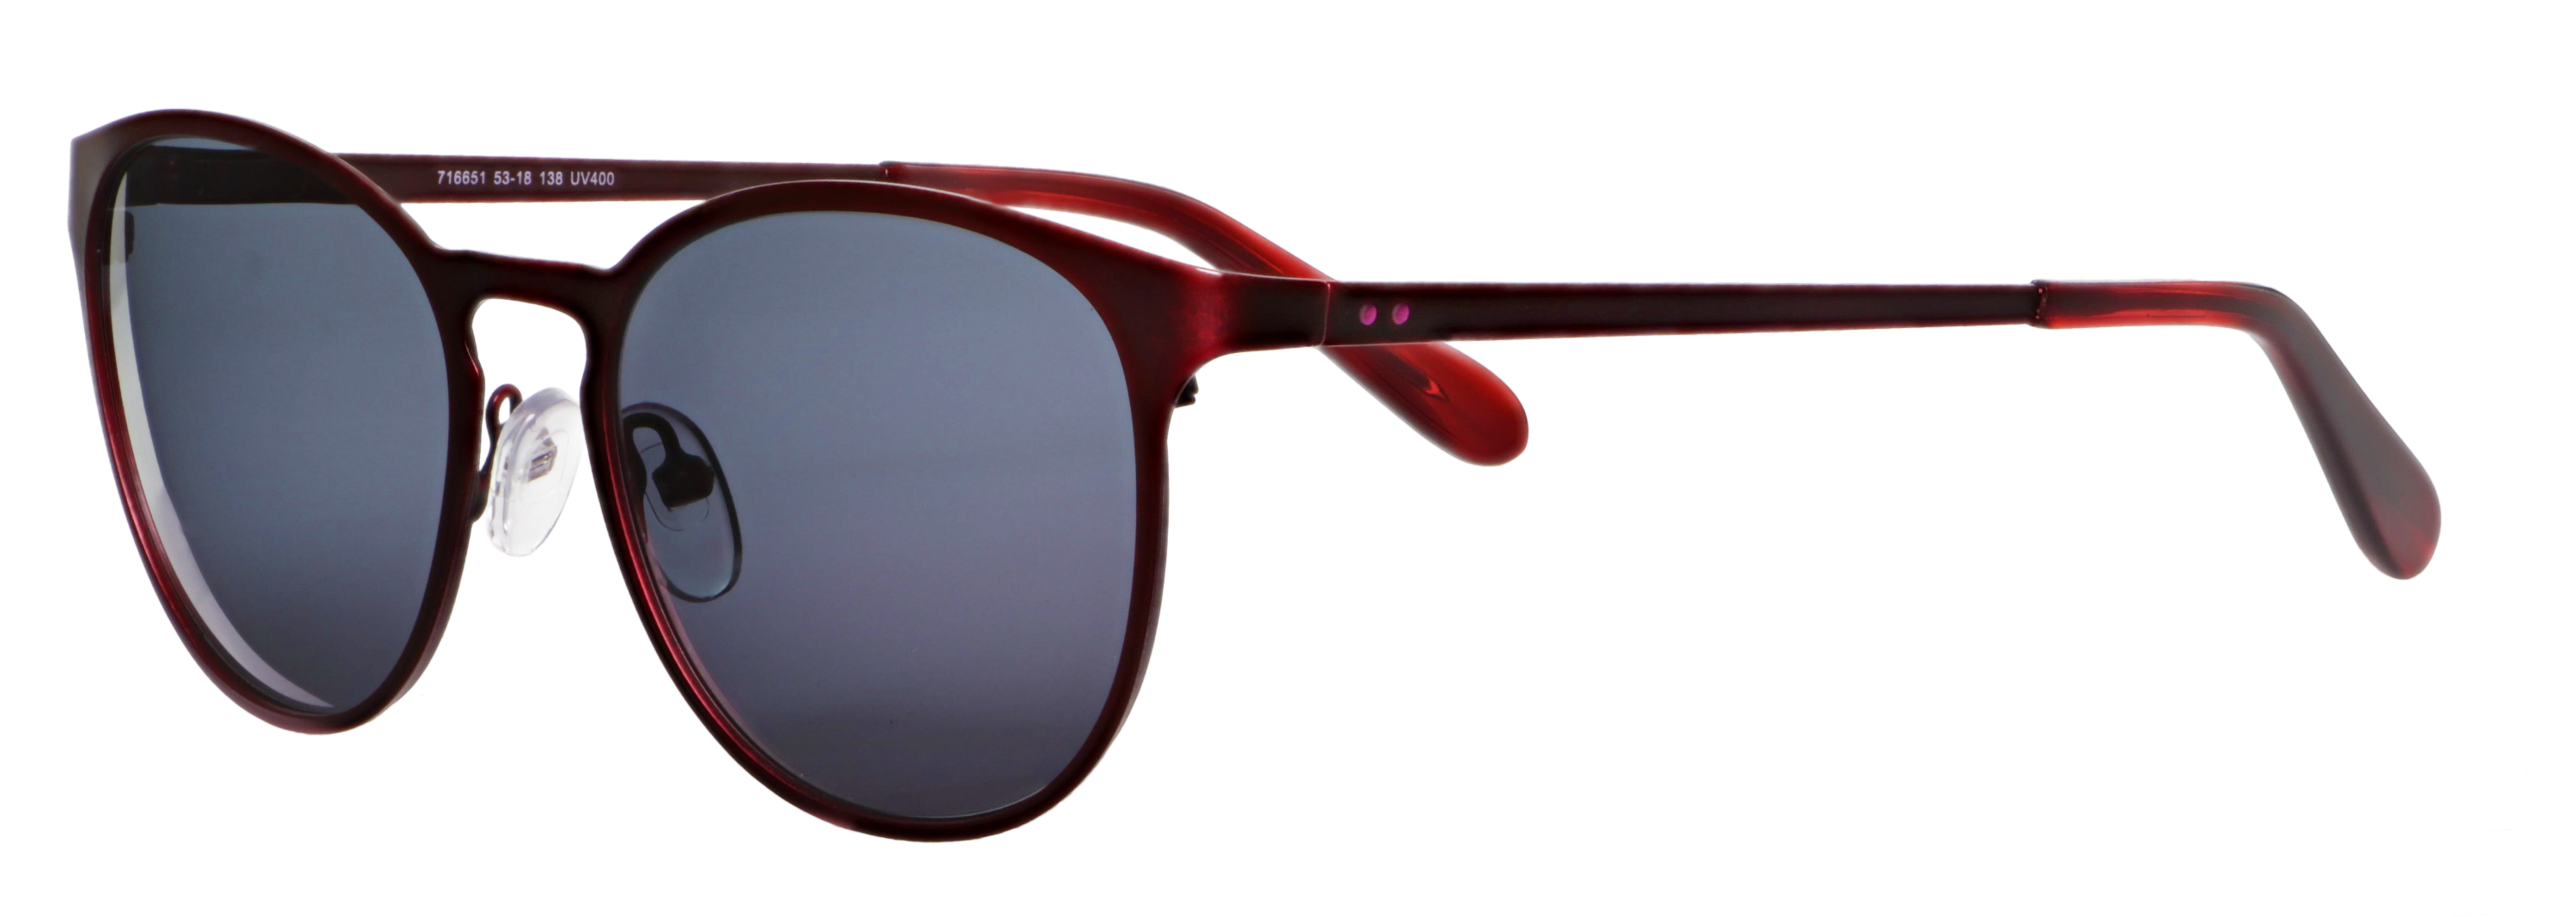 abele optik runde Sonnenbrille für Damen in Dunkelrot 716651